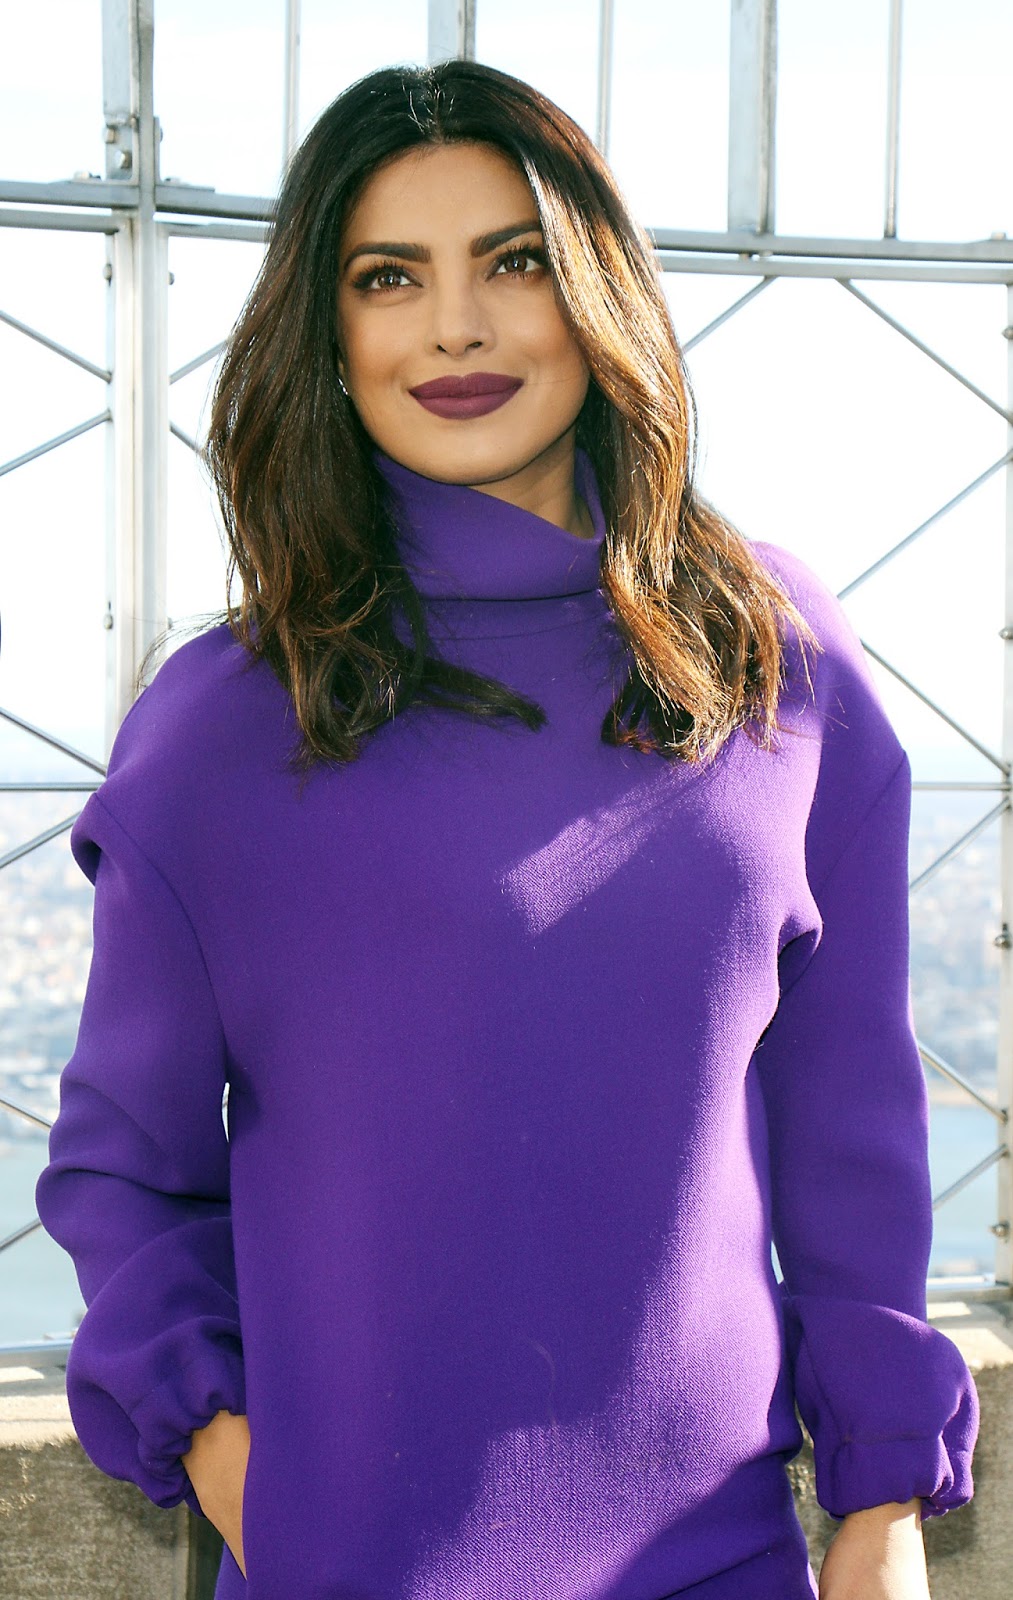 Priyanka Chopra Looks Sexy In a Purple Short Dress and Black Thigh High Boots During â€œQuanticoâ€ Promotion at The Empire State Building in New York City